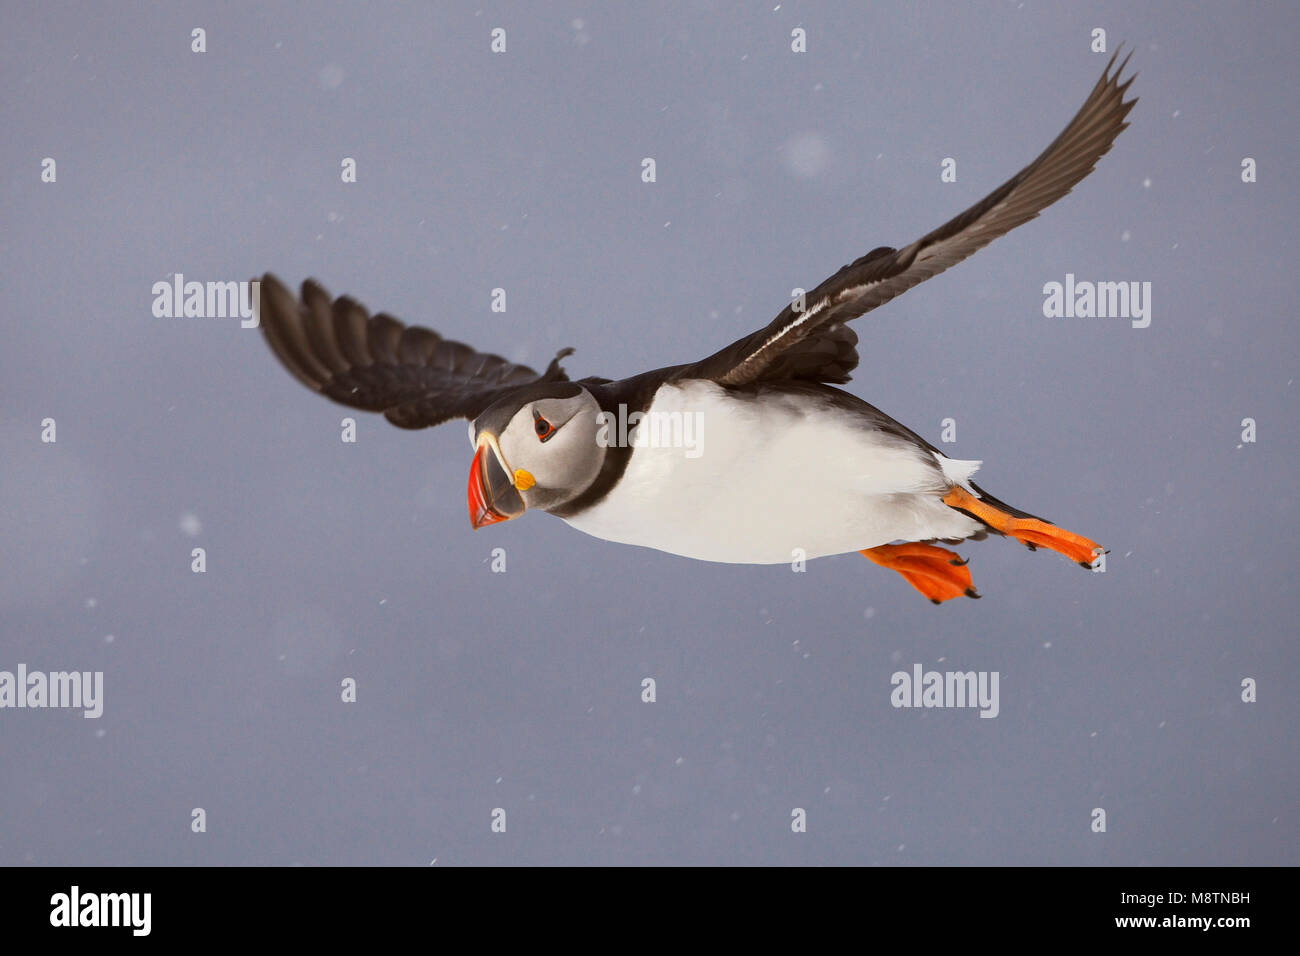 Papegaaiduiker vliegend in de sneeuw; Atlantic Puffin flying in snow Stock Photo